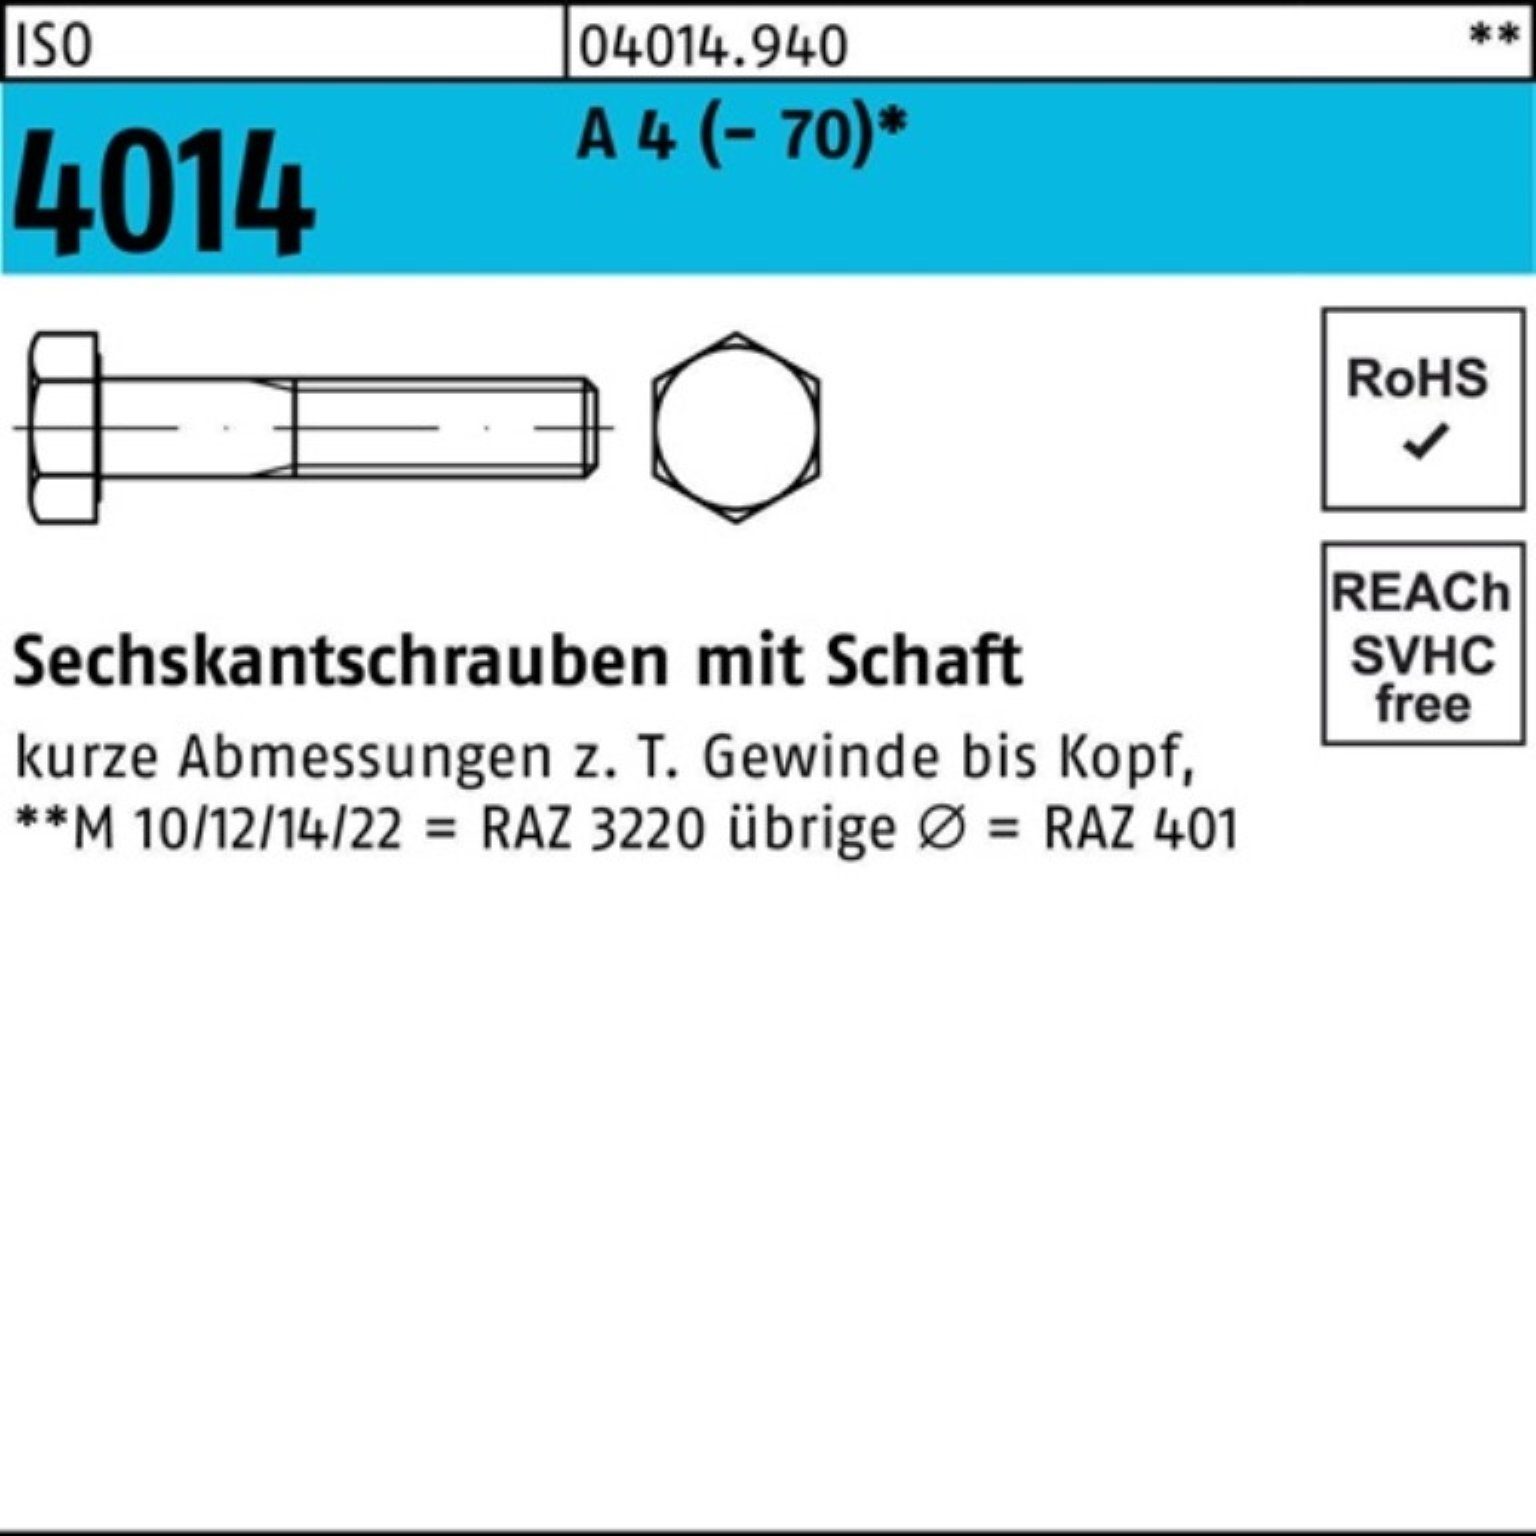 Bufab Sechskantschraube 100er Pack Sechskantschraube ISO 4014 Schaft M8x 50 A 4 (70) 100 St